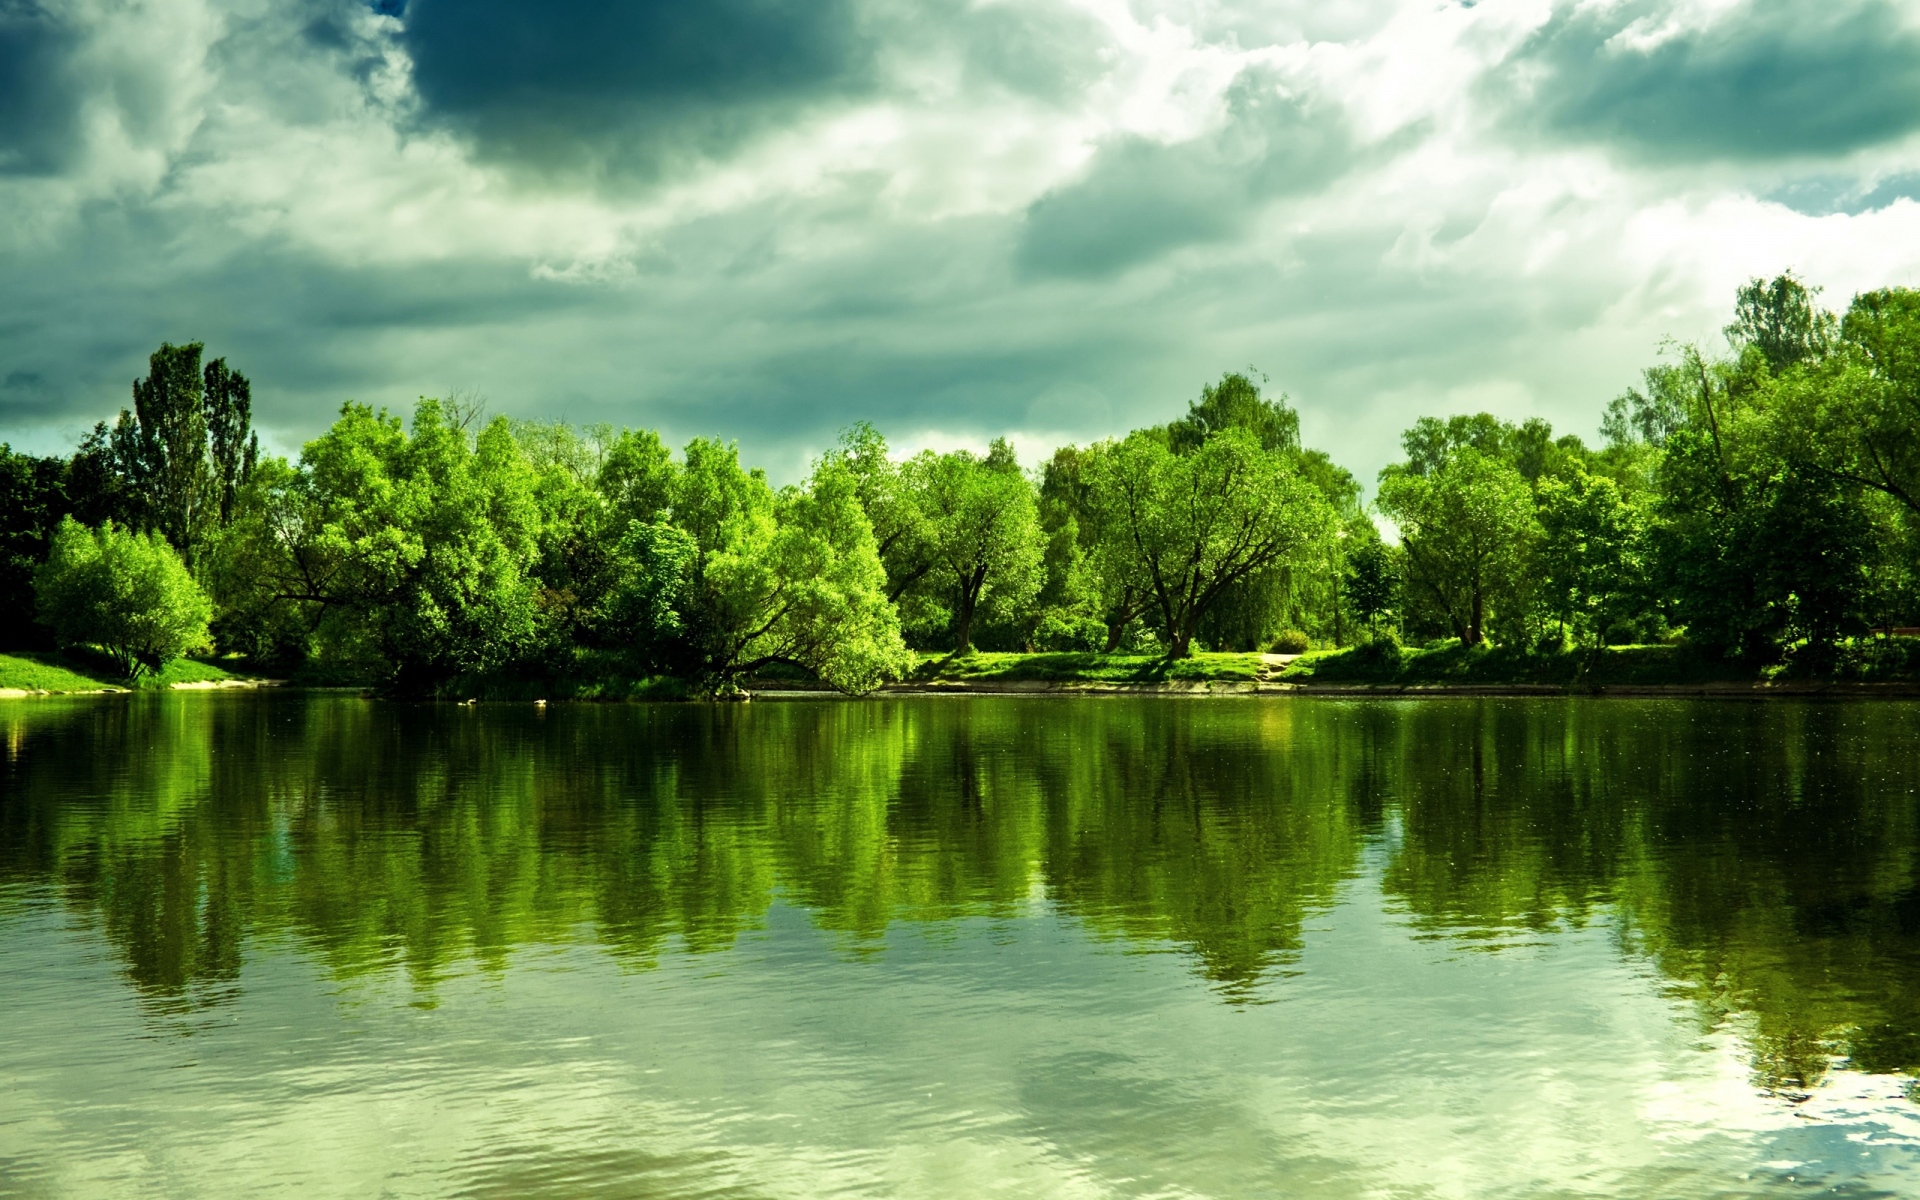 Картинки Озеро, деревья, берег, лето, облачно, облака, зеленый фото и обои на рабочий стол